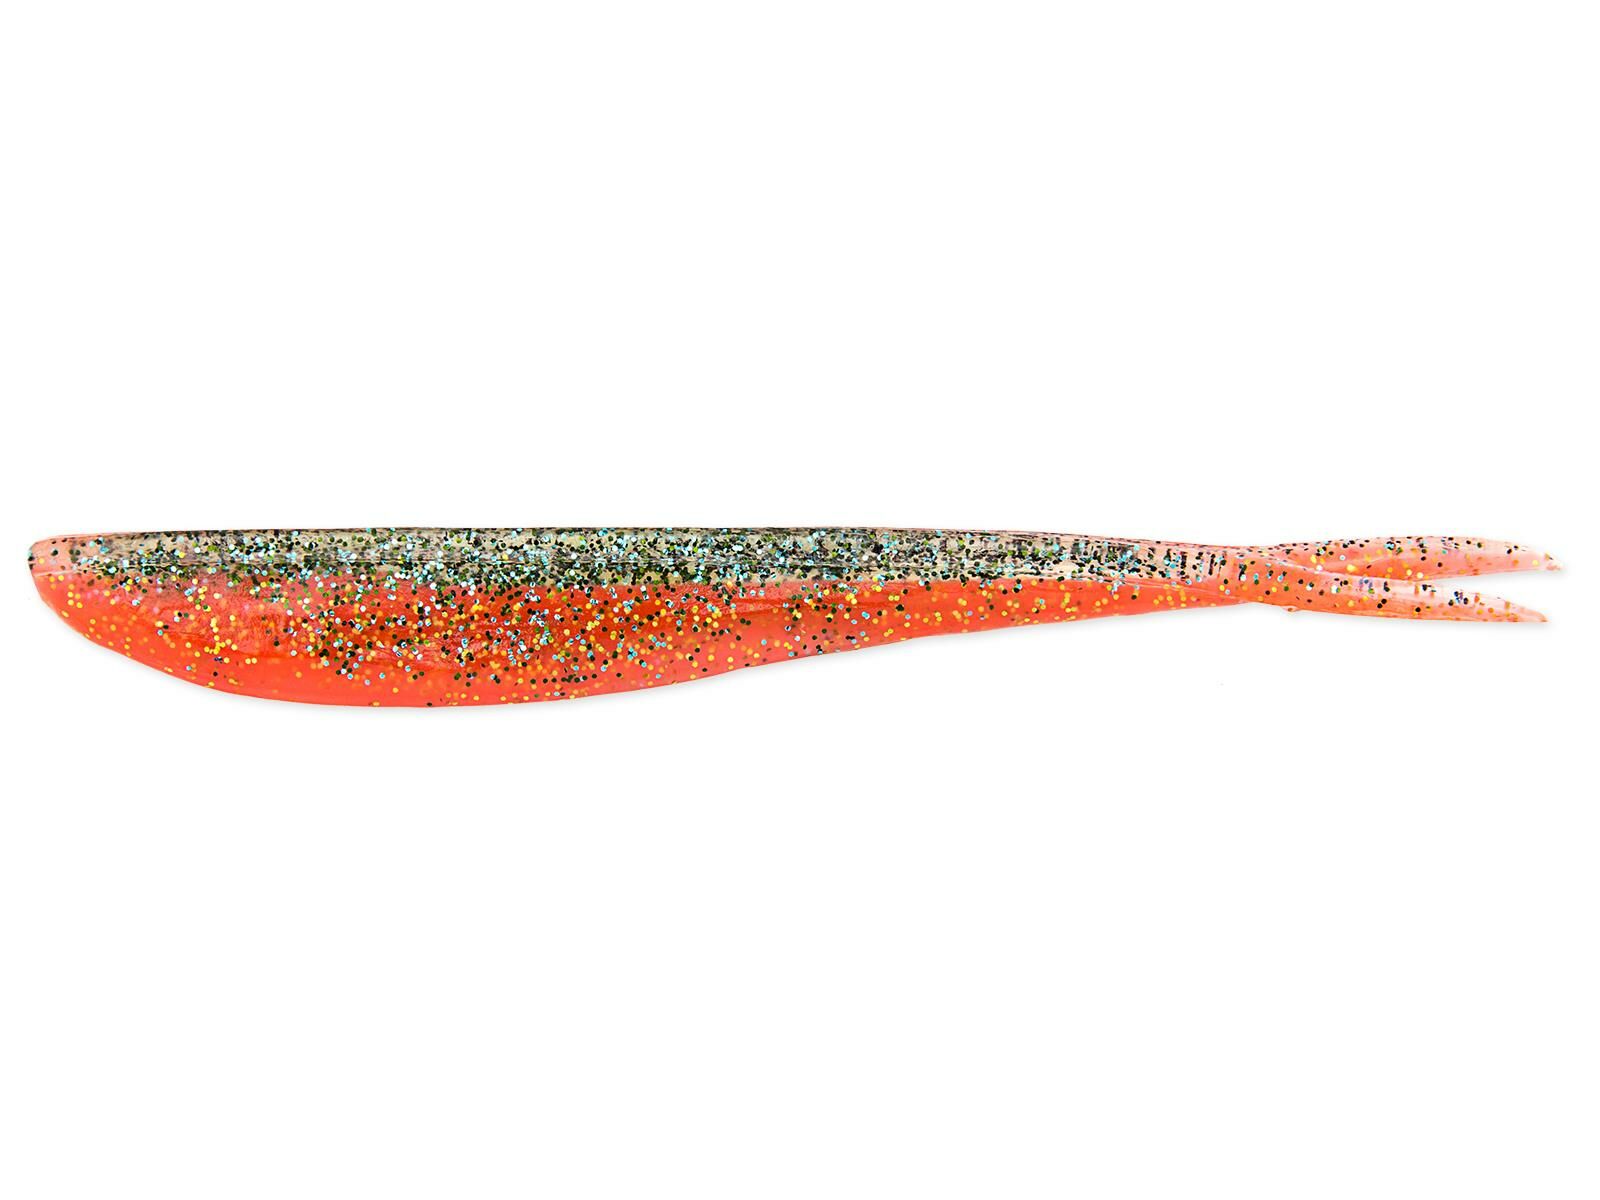 4" Fin-S Fish - Metallic Carrot